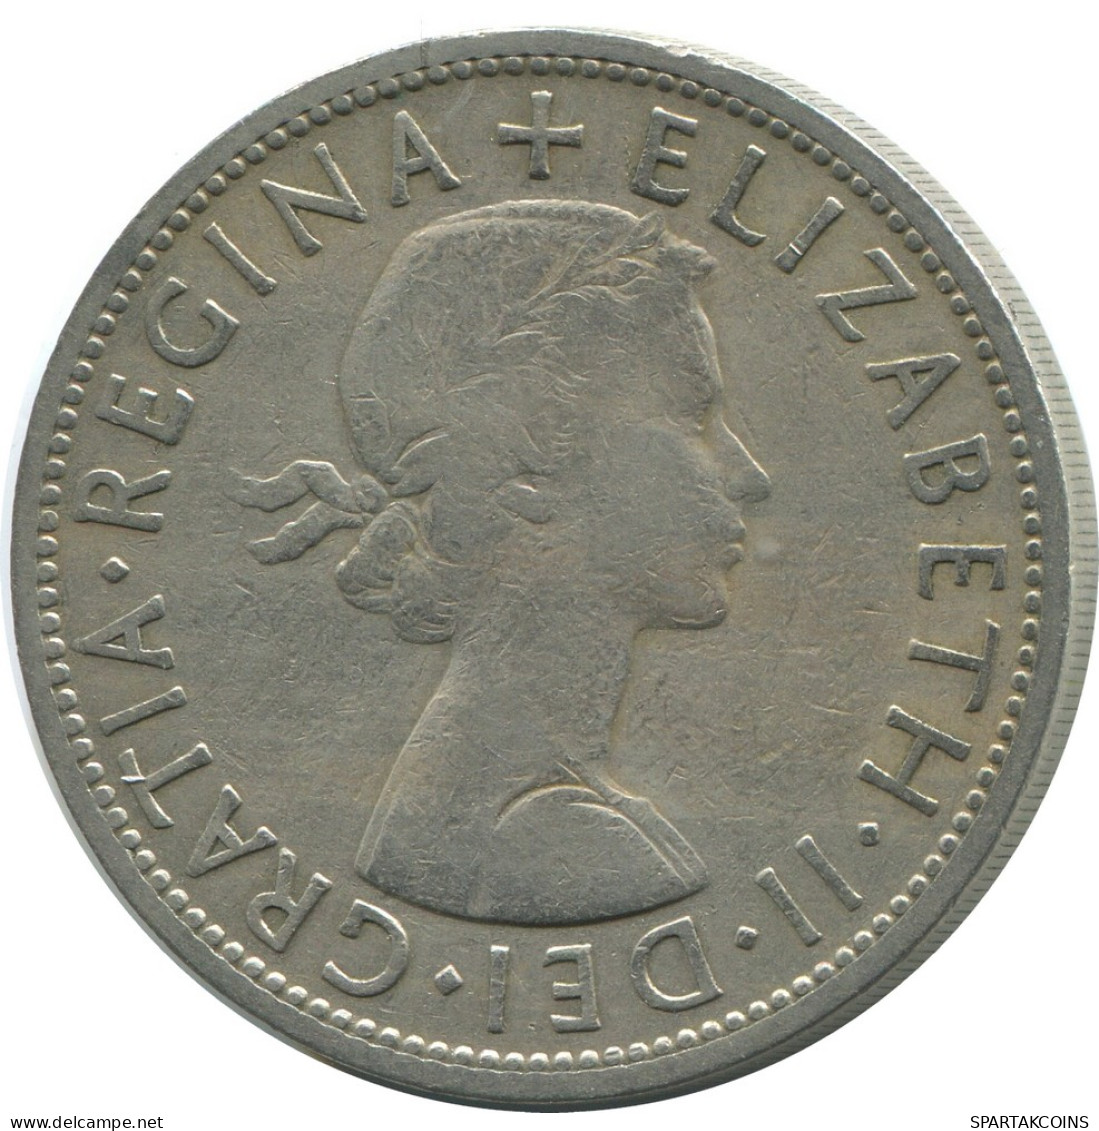 HALF CROWN 1956 UK GREAT BRITAIN Coin #AH015.1.U - K. 1/2 Crown